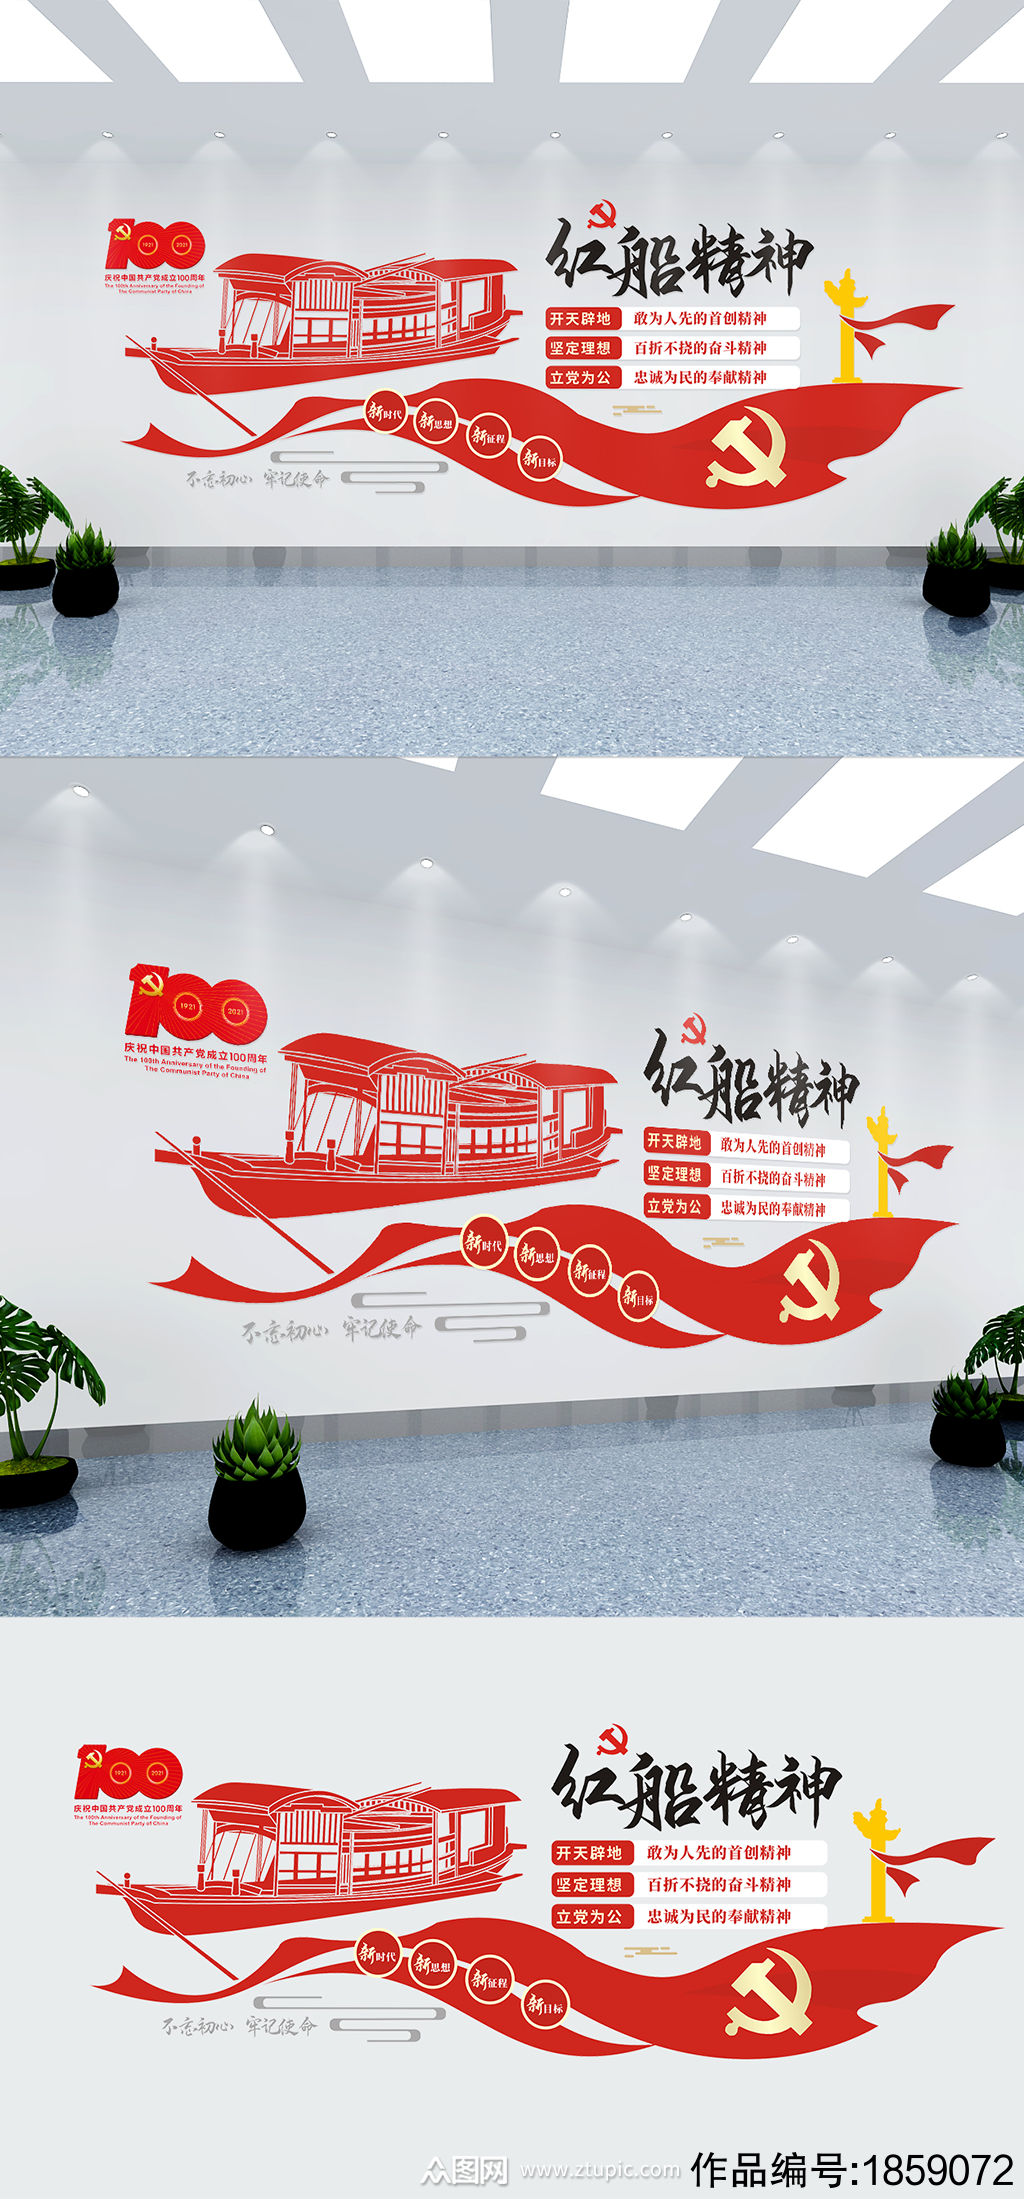 中国精神红船精神文化墙素材